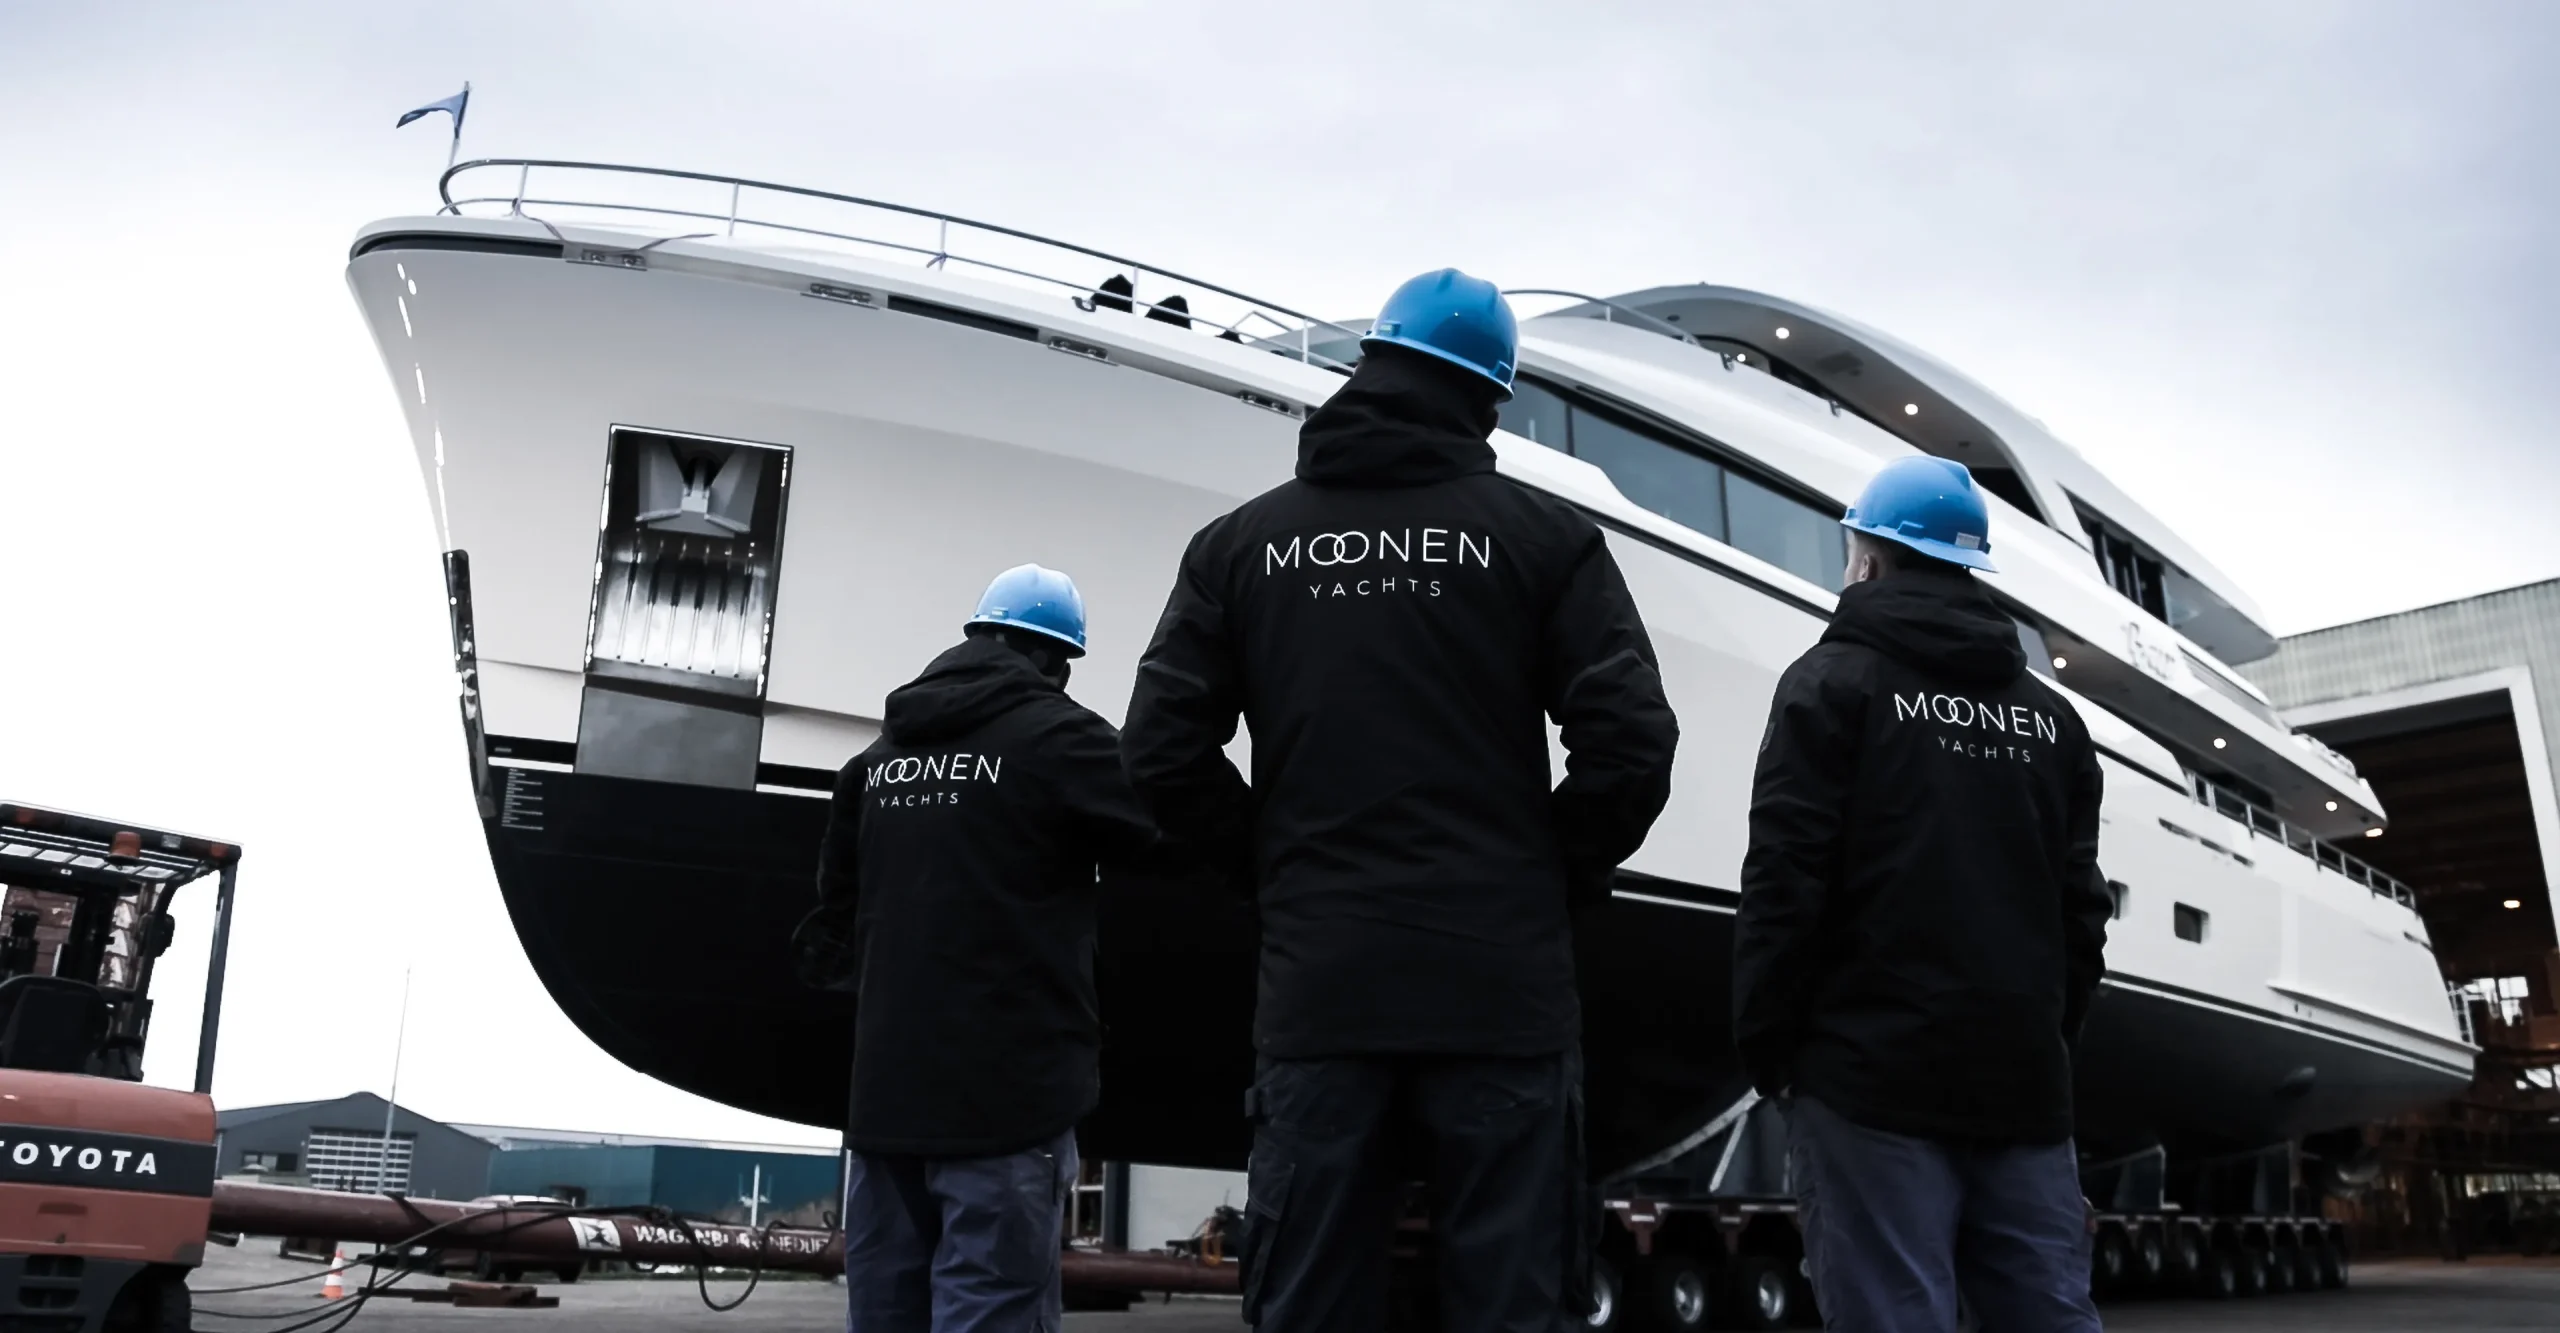 Copy Of Moonen Yachts Launch Yn200@2x